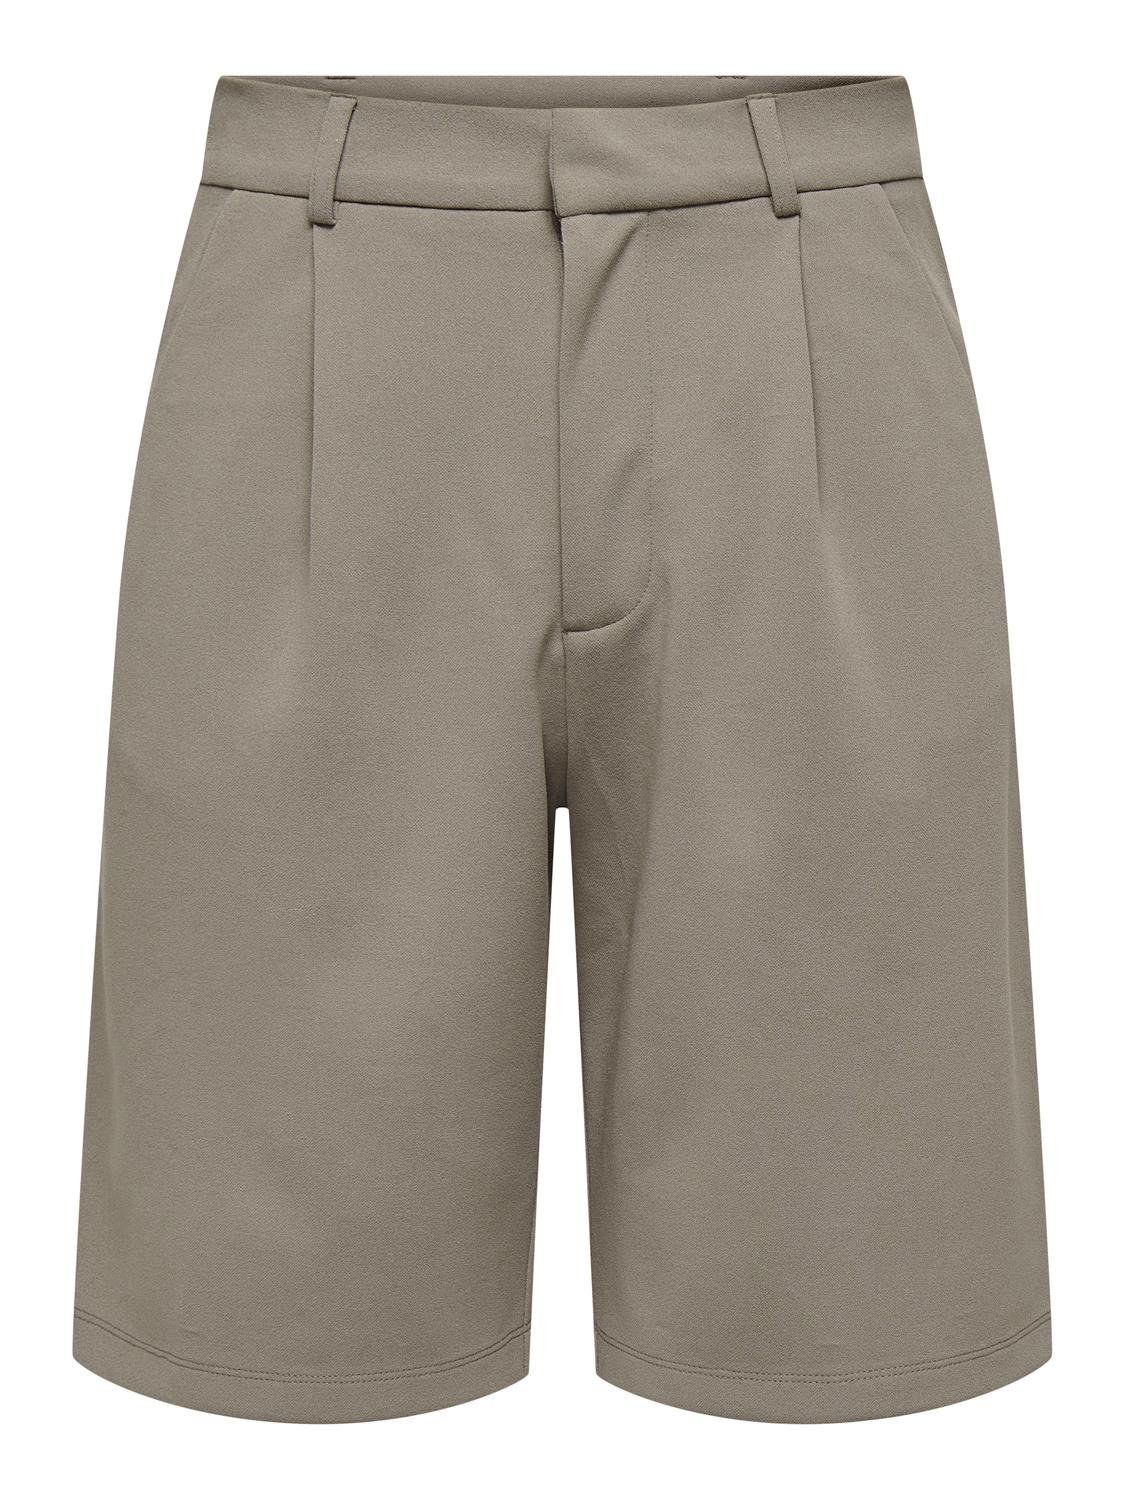 ONLY Klassisk kostym Shorts -Driftwood - 15257249